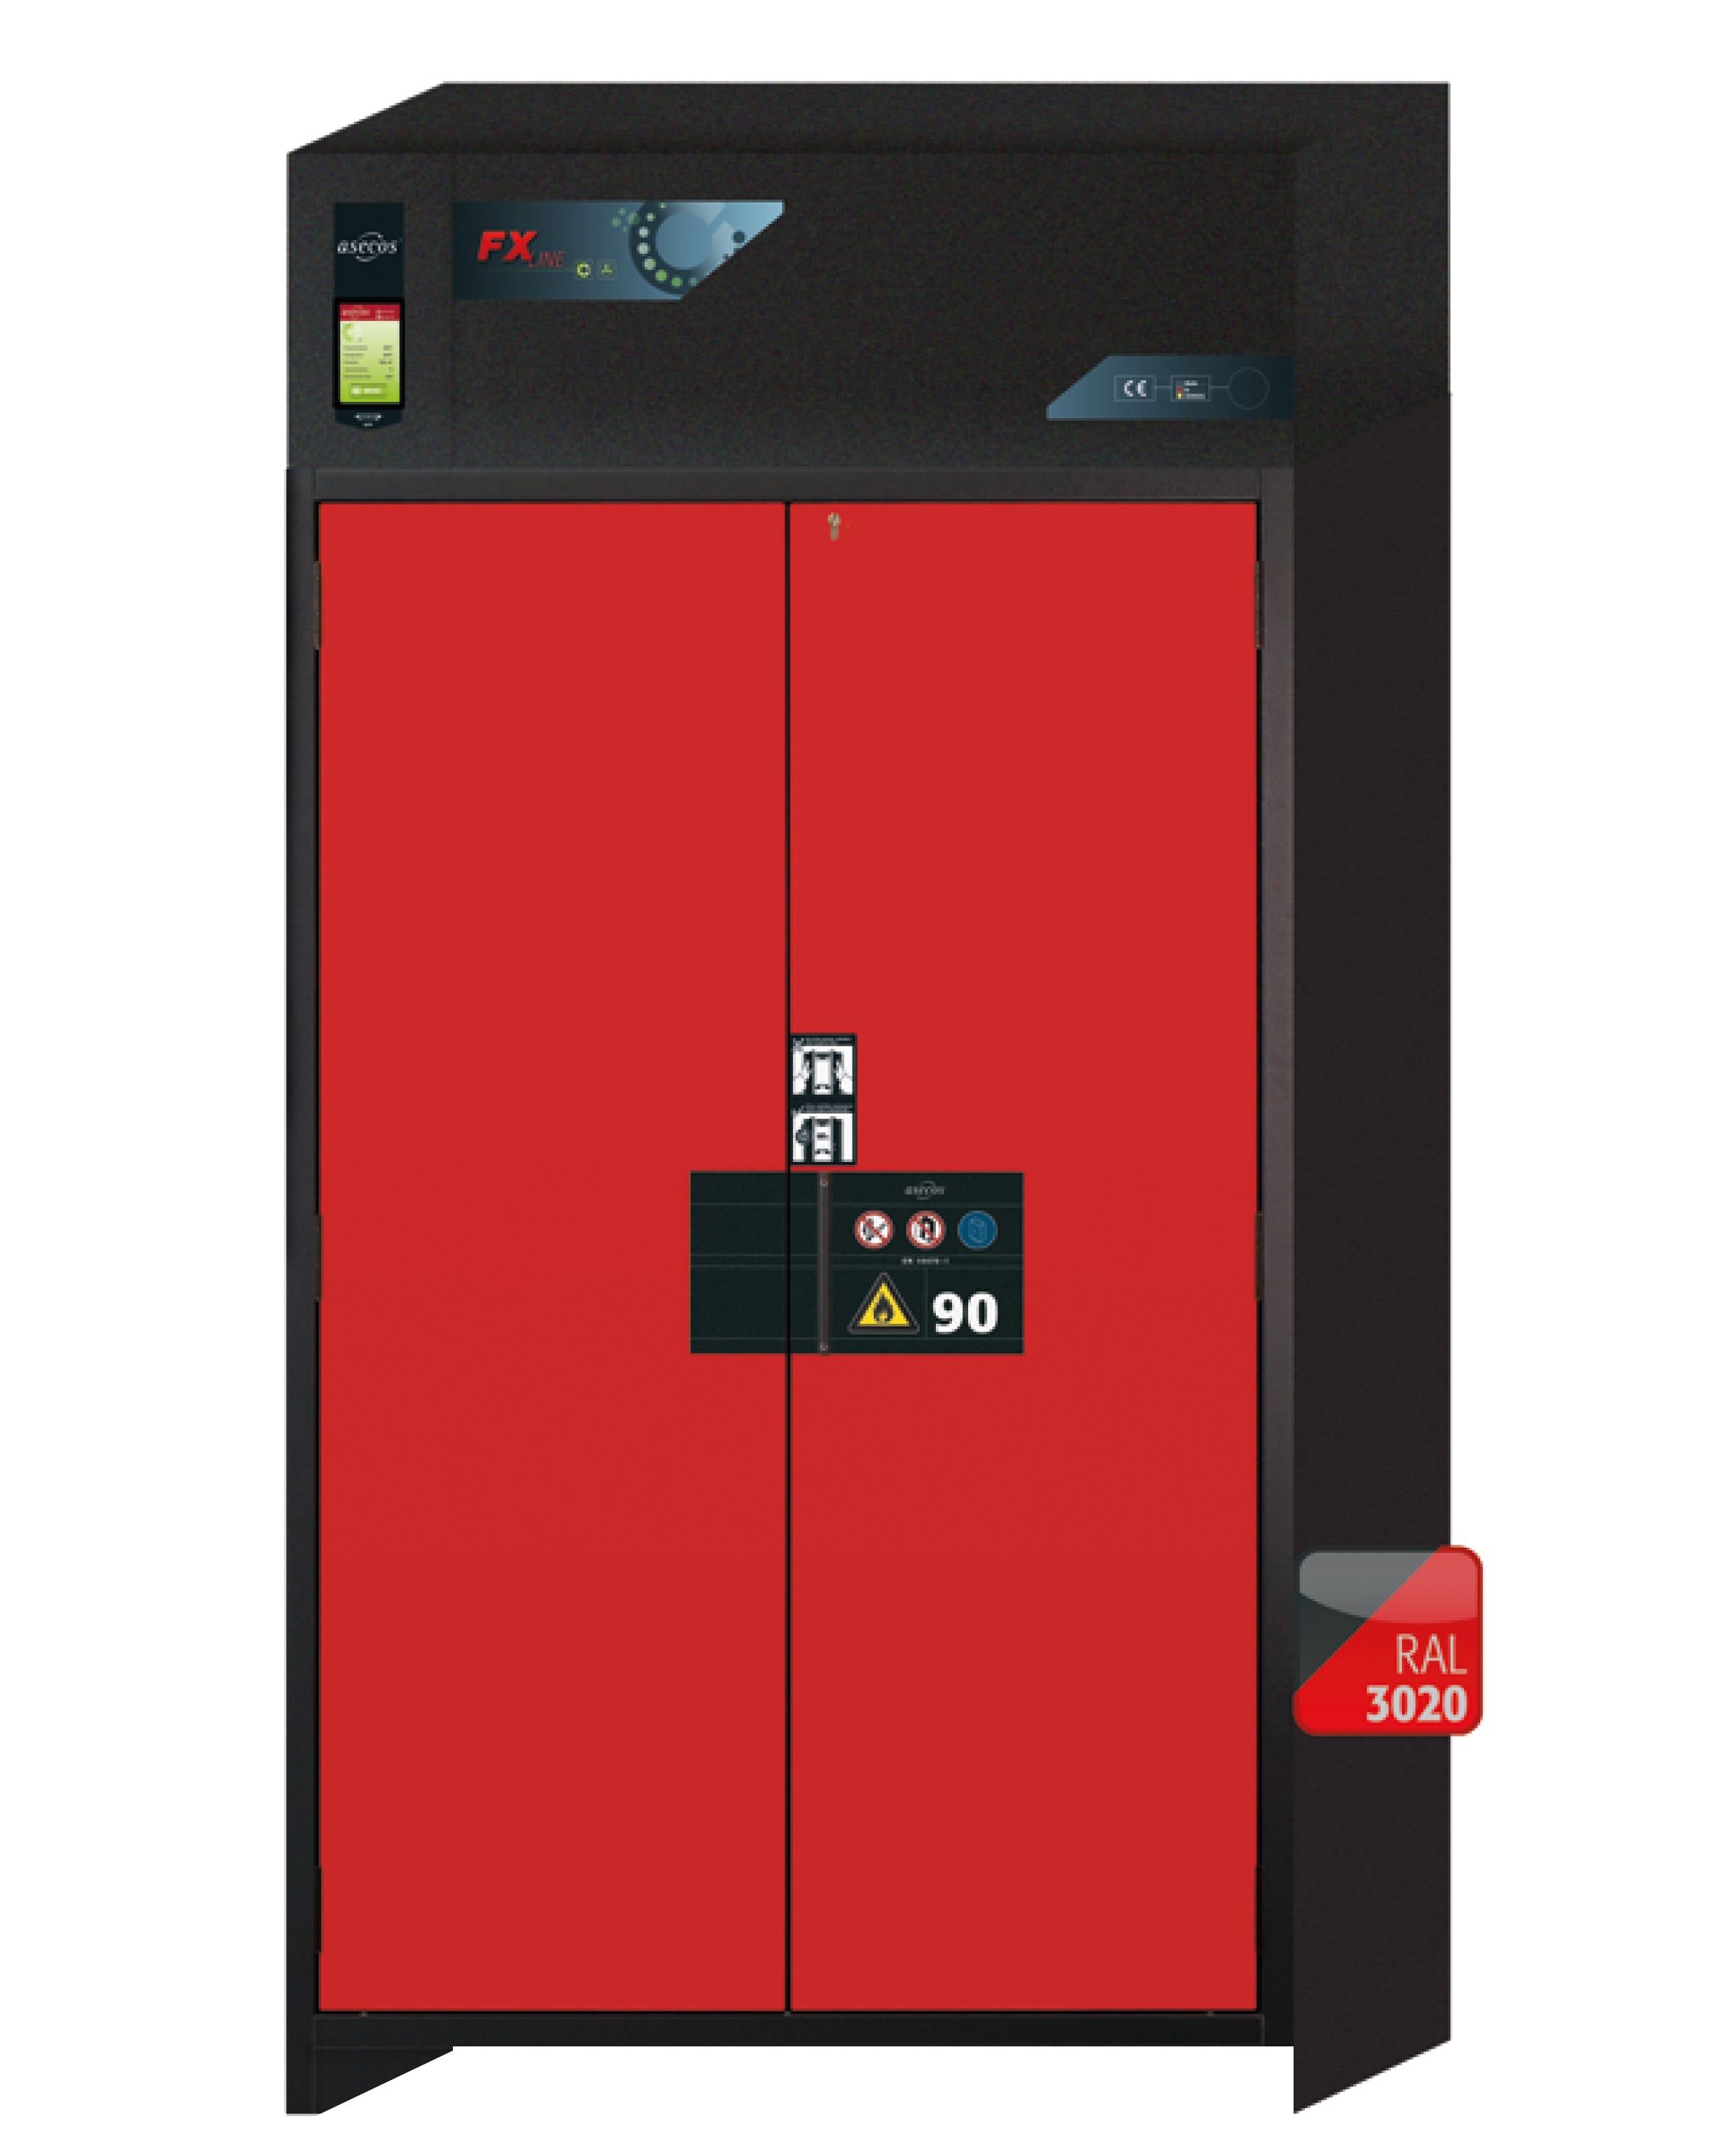 Armoire de filtration d'air de recirculation de type 90 FX-PEGASUS-90 modèle FX90.229.120.WDAC en rouge signalisation RAL 3020 avec 3 étagères standard (acier inoxydable 1.4301)